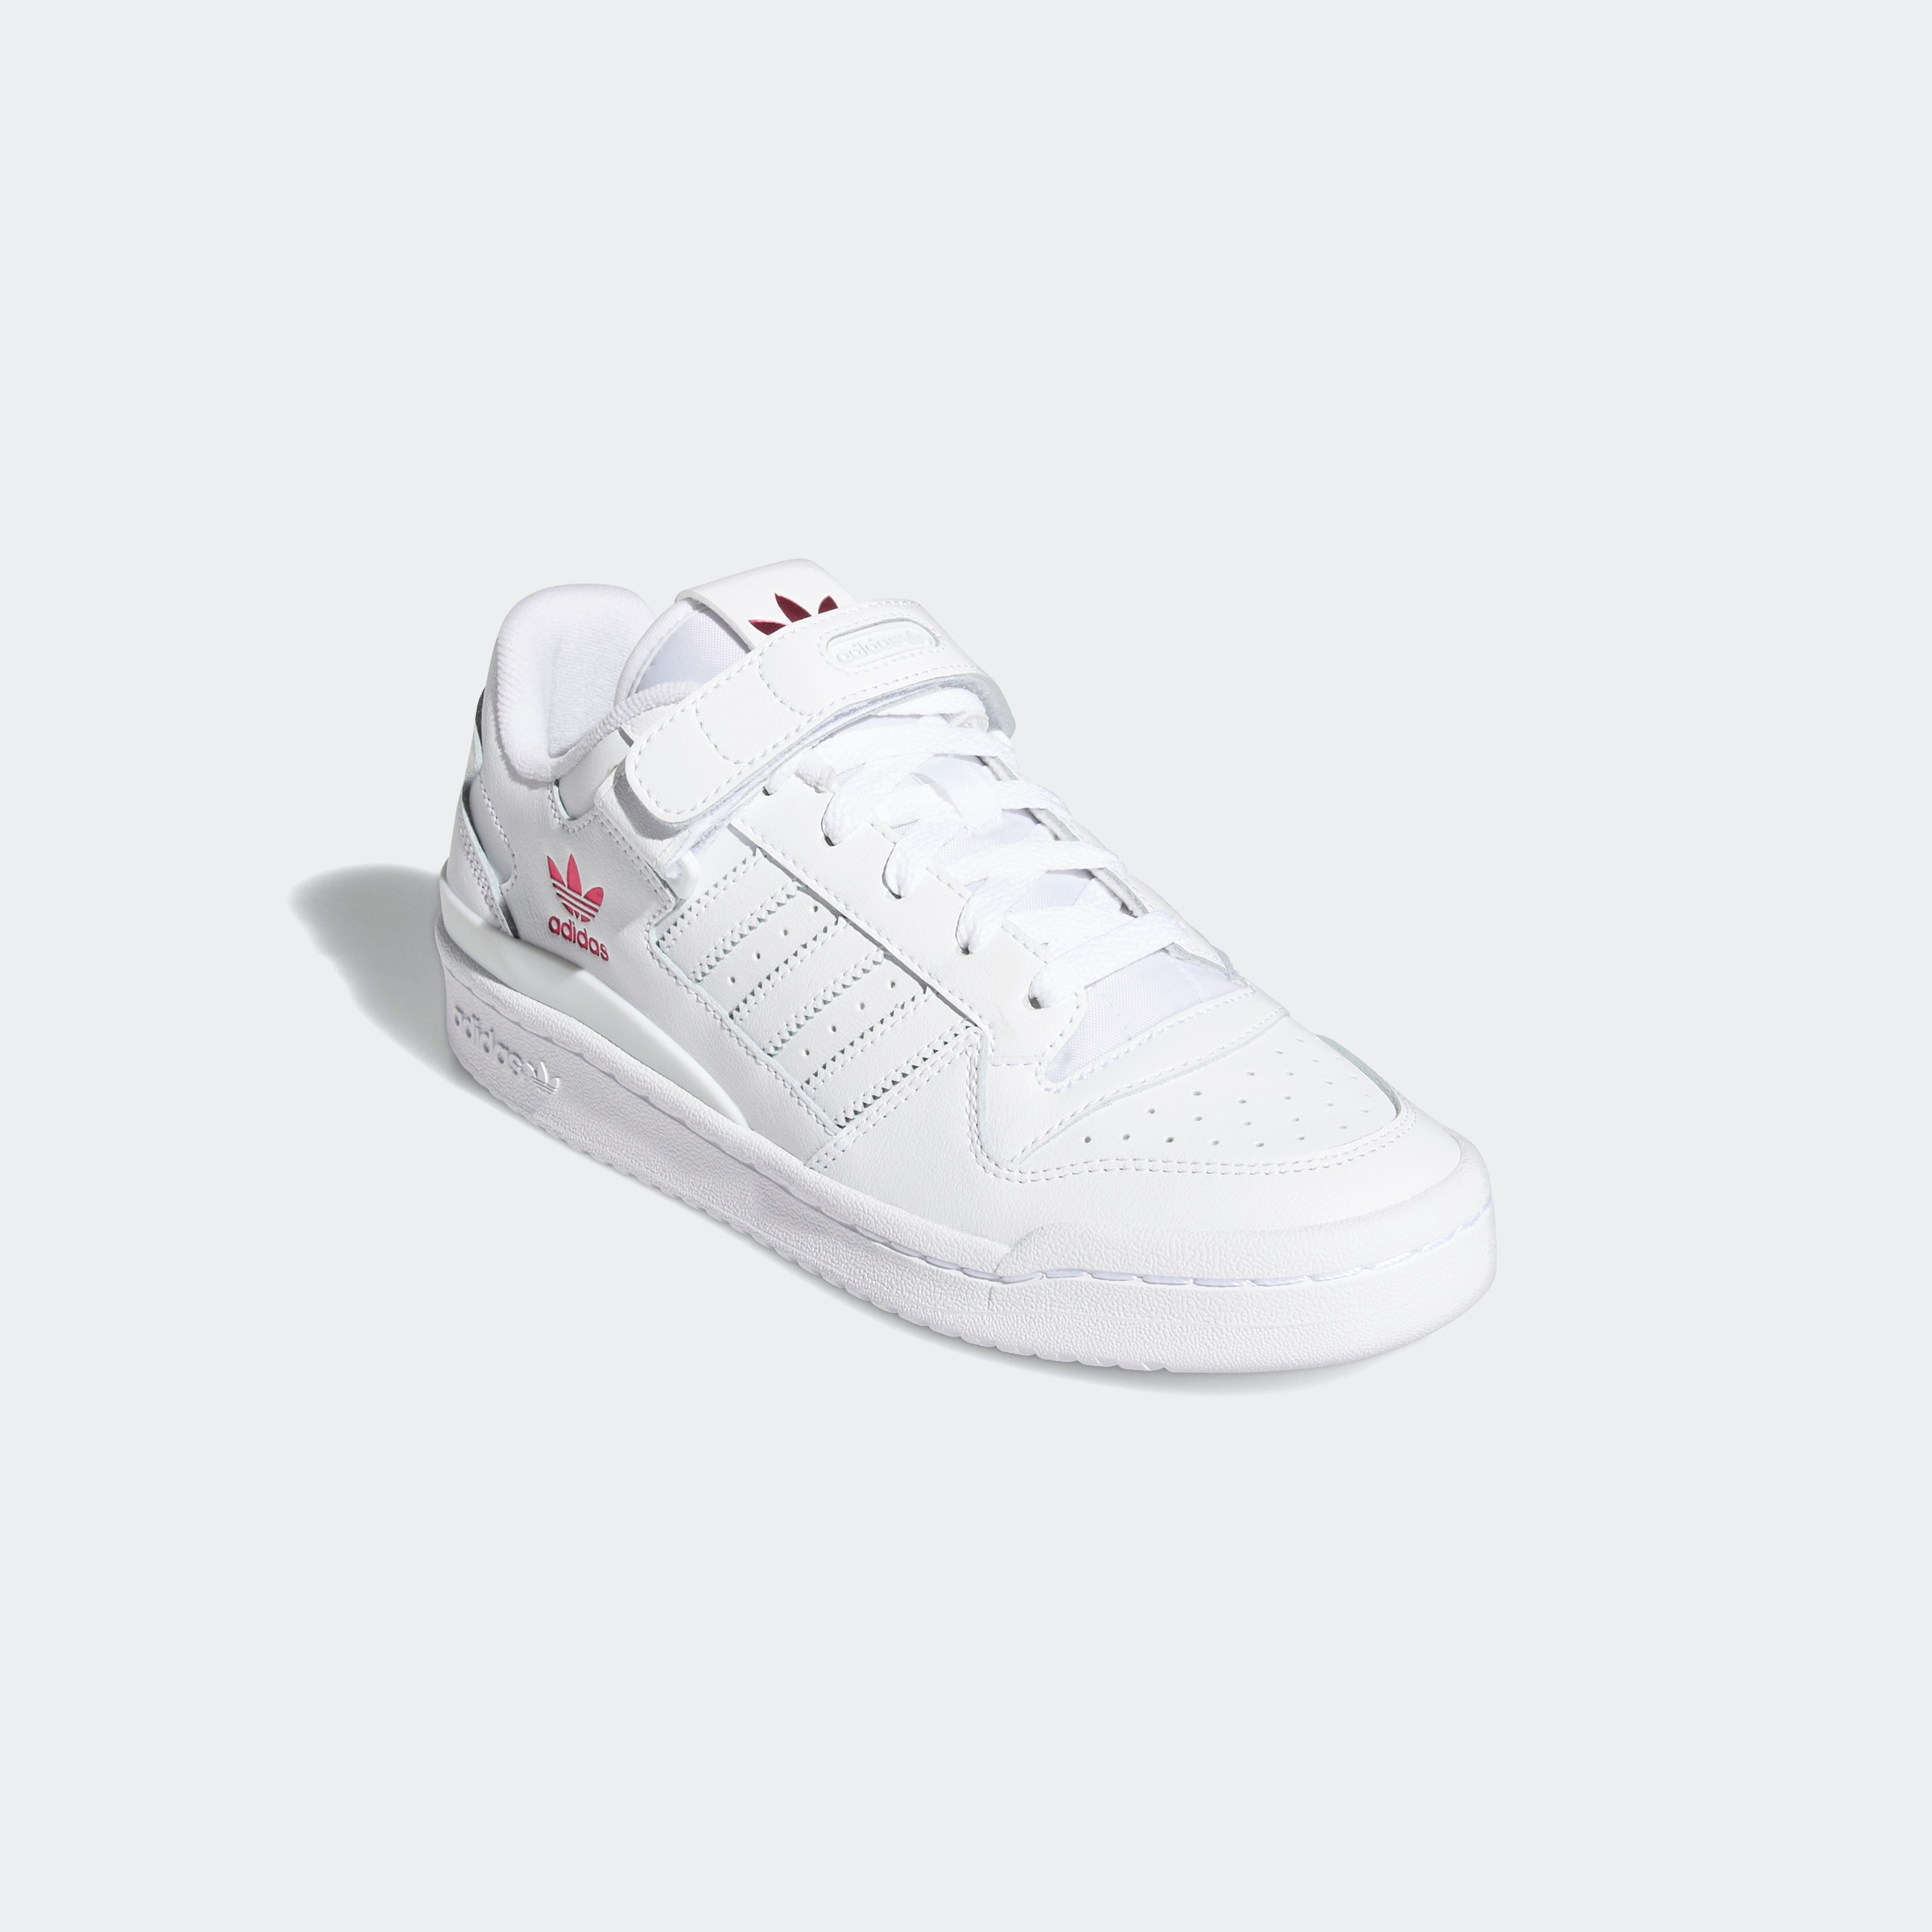 Originals »FORUM im Sneaker Shop OTTO adidas LOW« bestellen Online